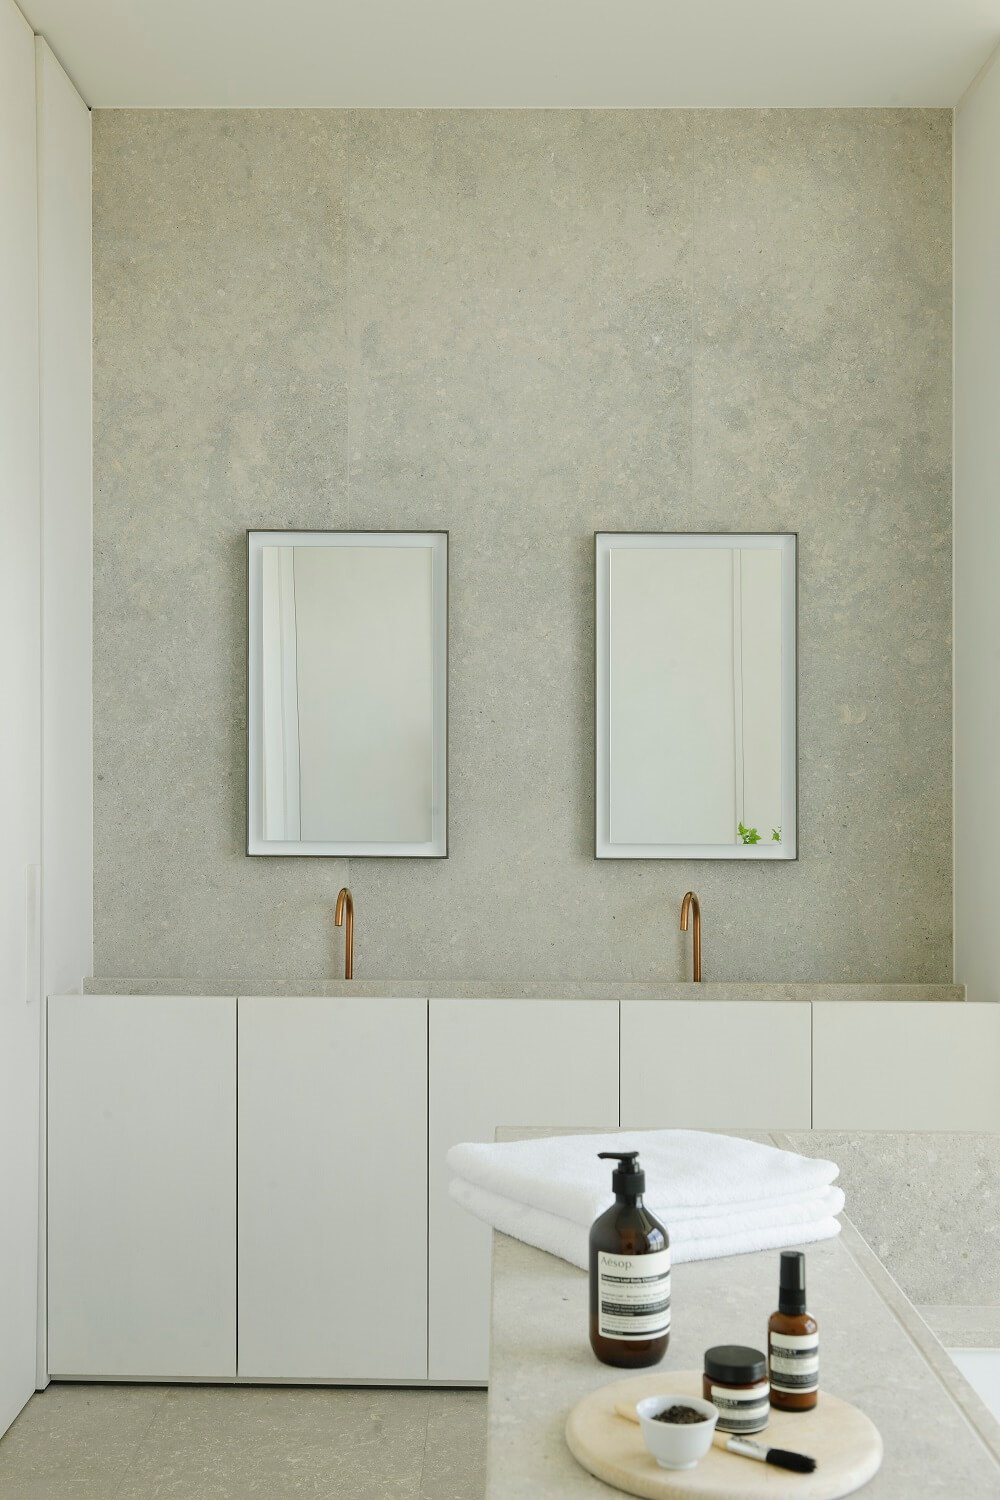 Bajalavabo blanco con grifería encastrada dorada dos espejos y pared gris